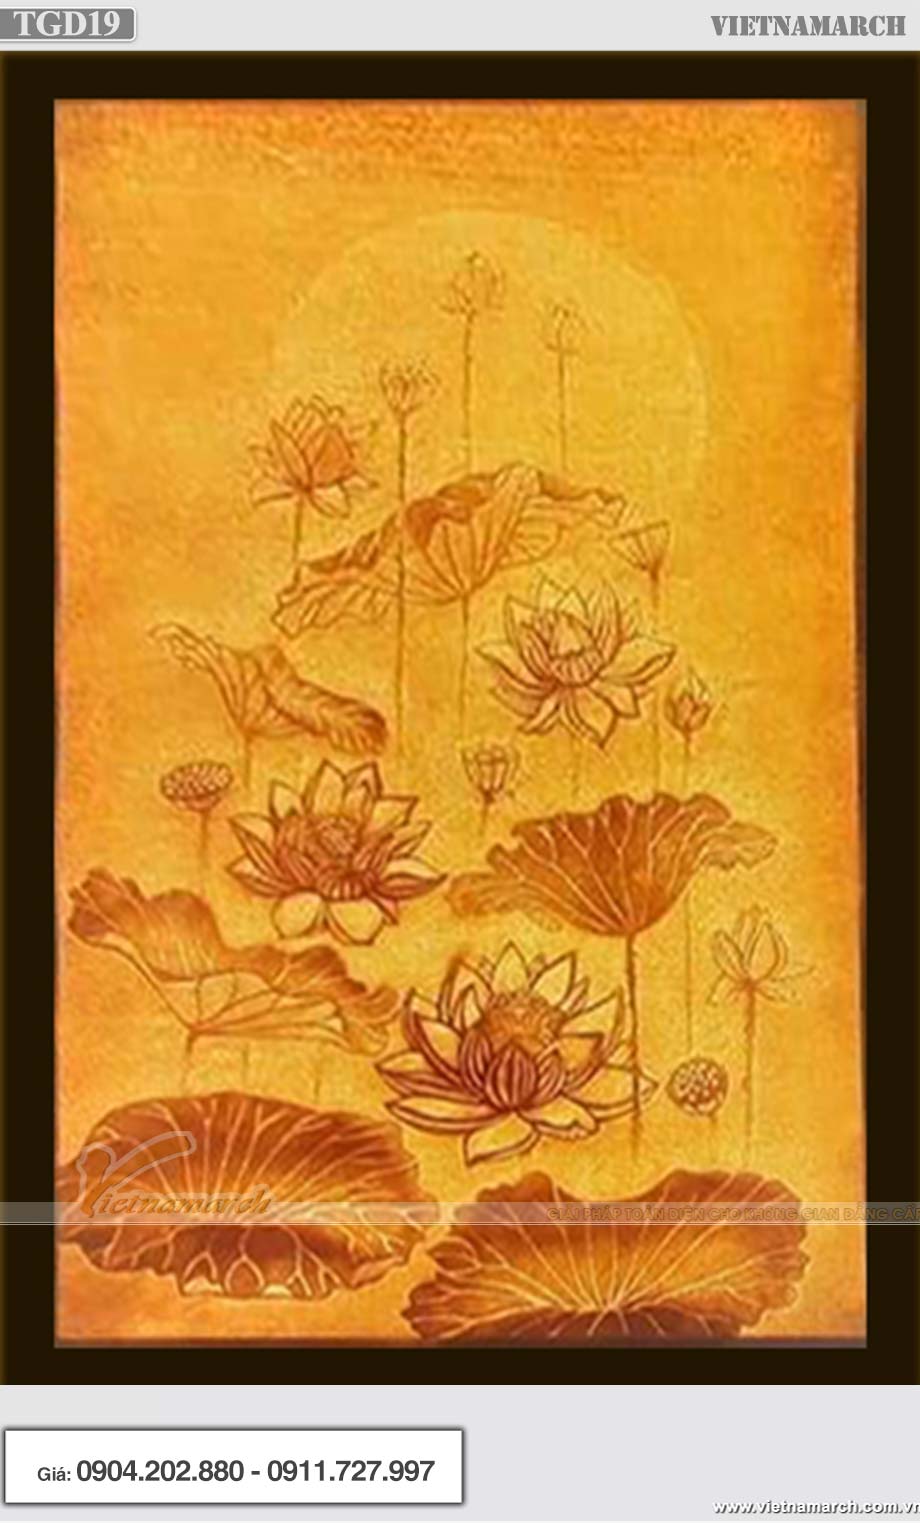 Mẫu tranh giấy dừa hoa sen hình chữ nhật - TGD19